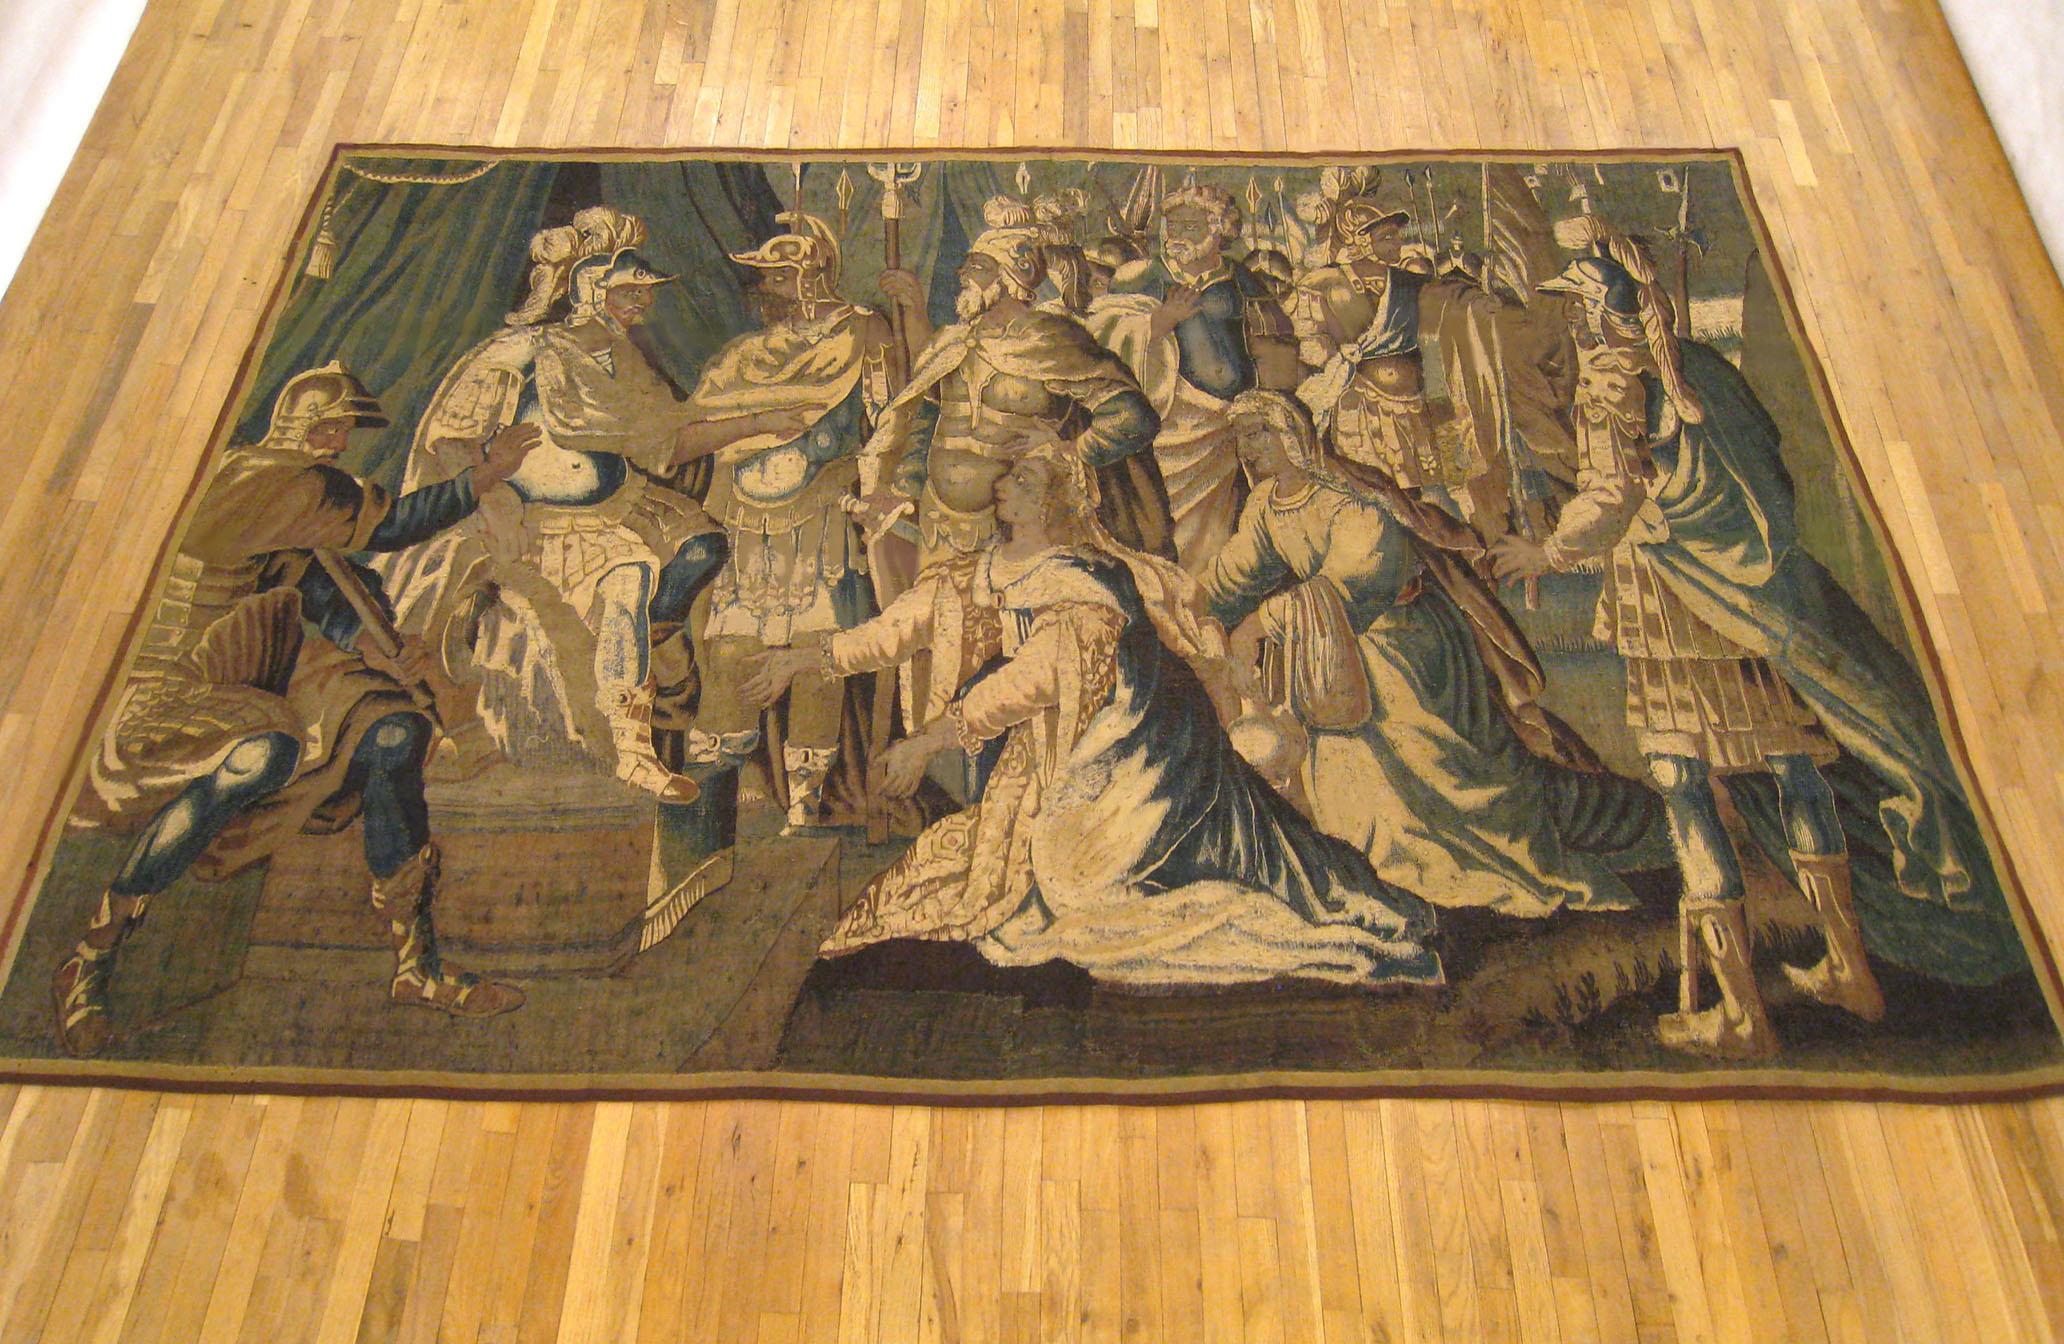 Ancienne tapisserie historique flamande du XVIIe siècle, de dimensions 7' H x 11' L, représentant le général romain Coriolan, trônant à gauche, avec sa mère dominatrice Volumnia et sa femme Virgilia le suppliant de ne pas se laisser abuser par les